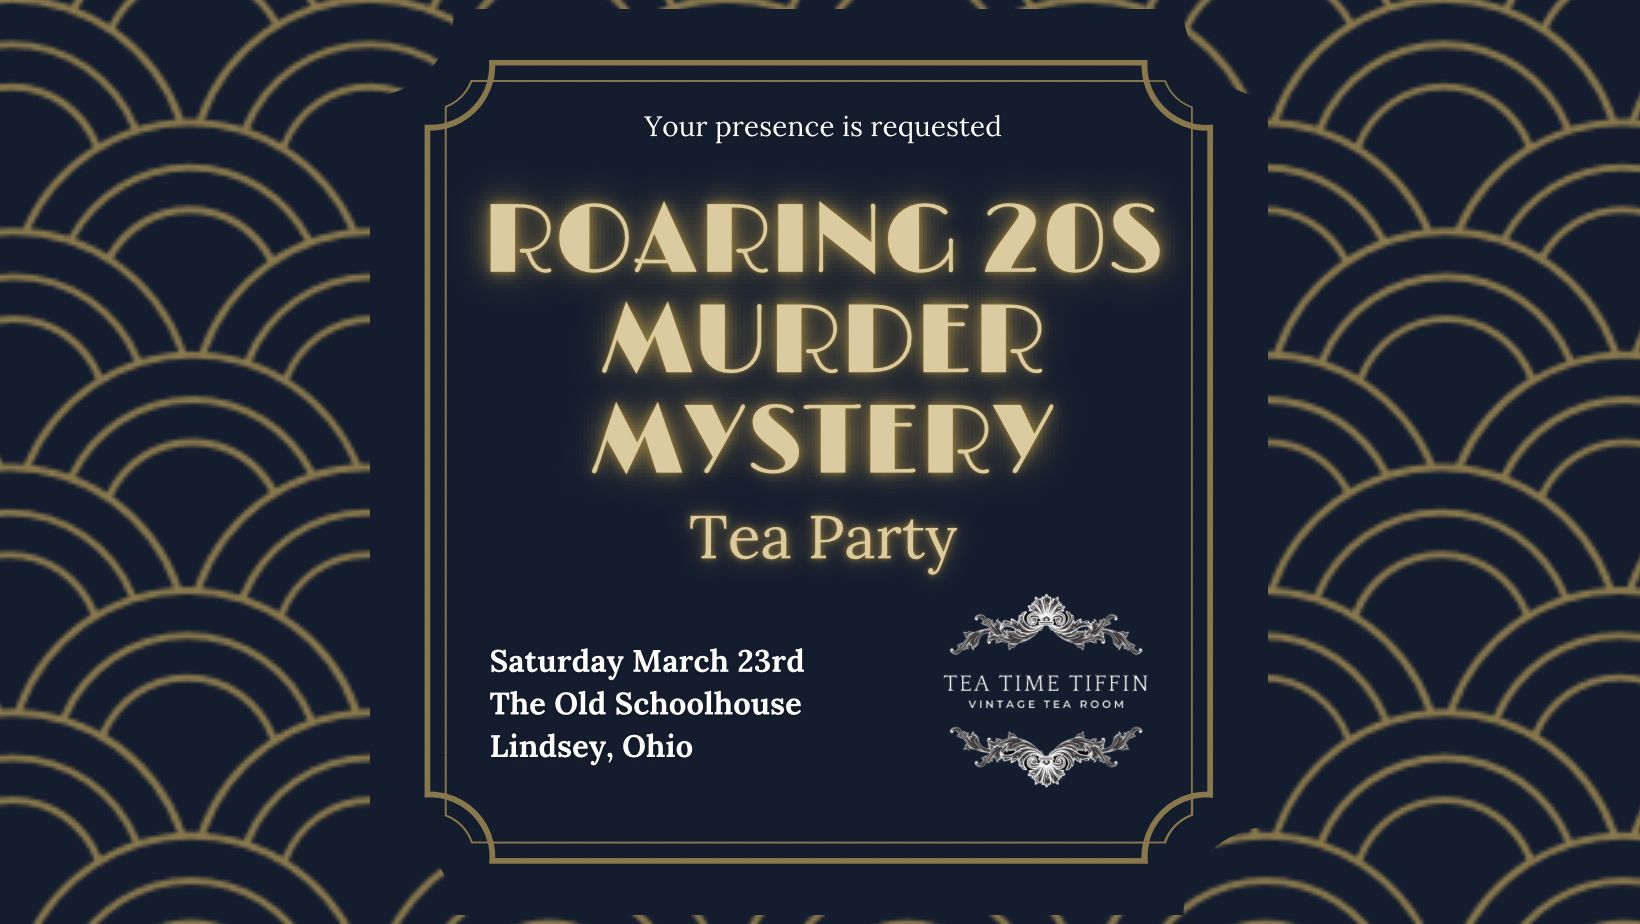 Roaring 20's Murder Mystery Tea Party